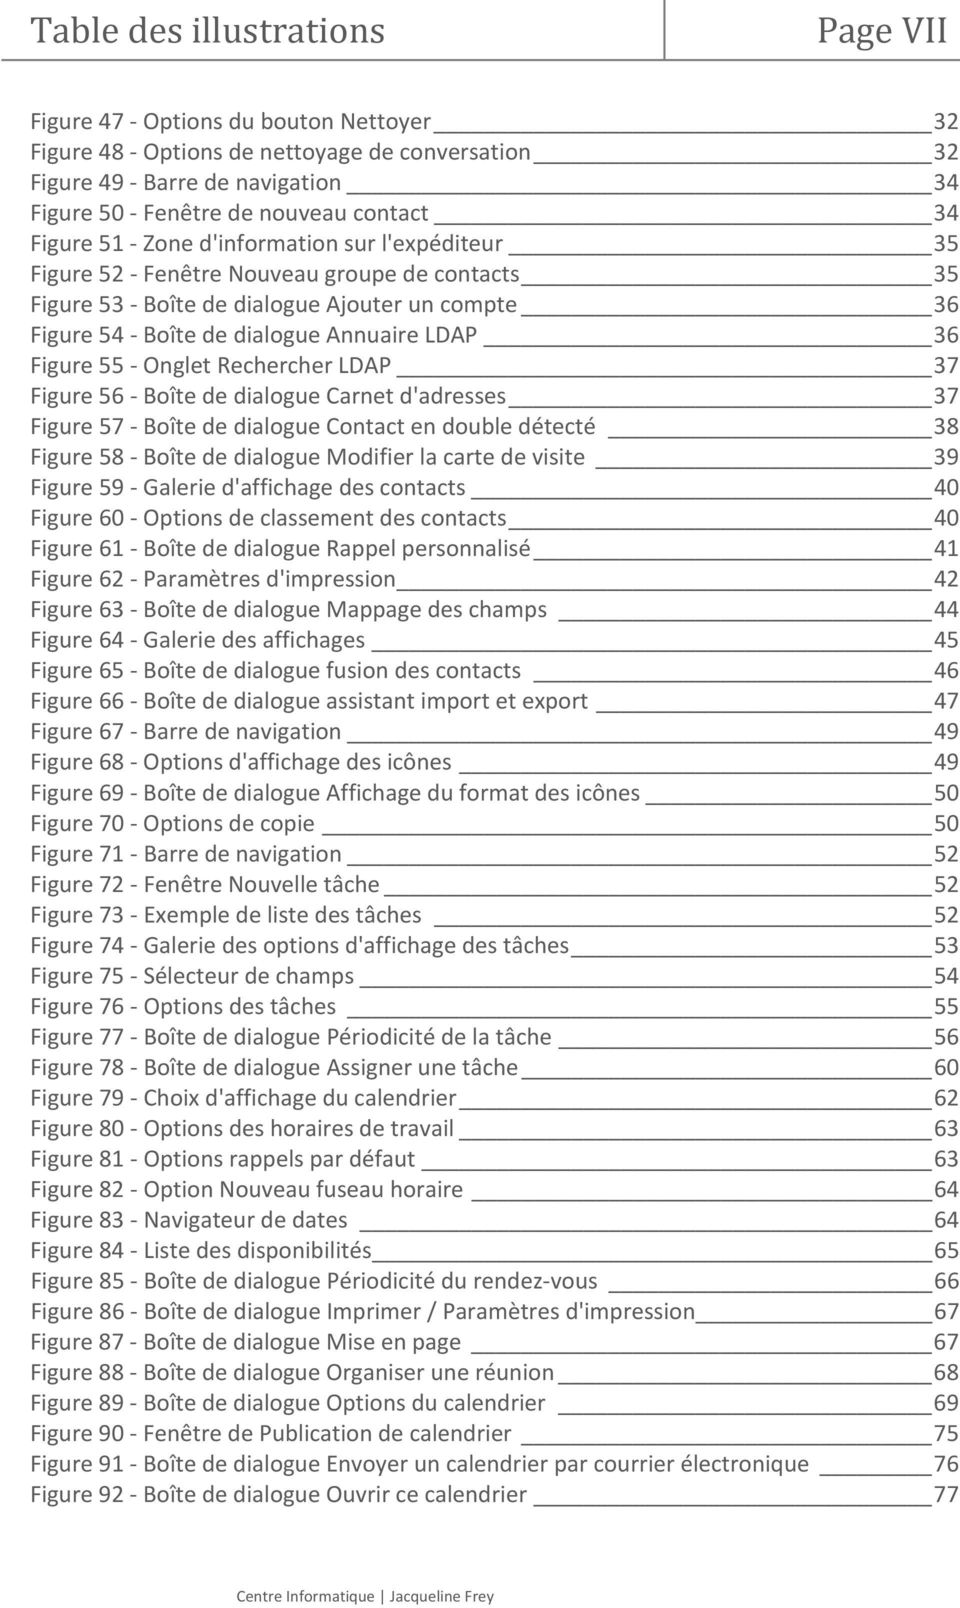 Annuaire LDAP 36 Figure 55 - Onglet Rechercher LDAP 37 Figure 56 - Boîte de dialogue Carnet d'adresses 37 Figure 57 - Boîte de dialogue Contact en double détecté 38 Figure 58 - Boîte de dialogue